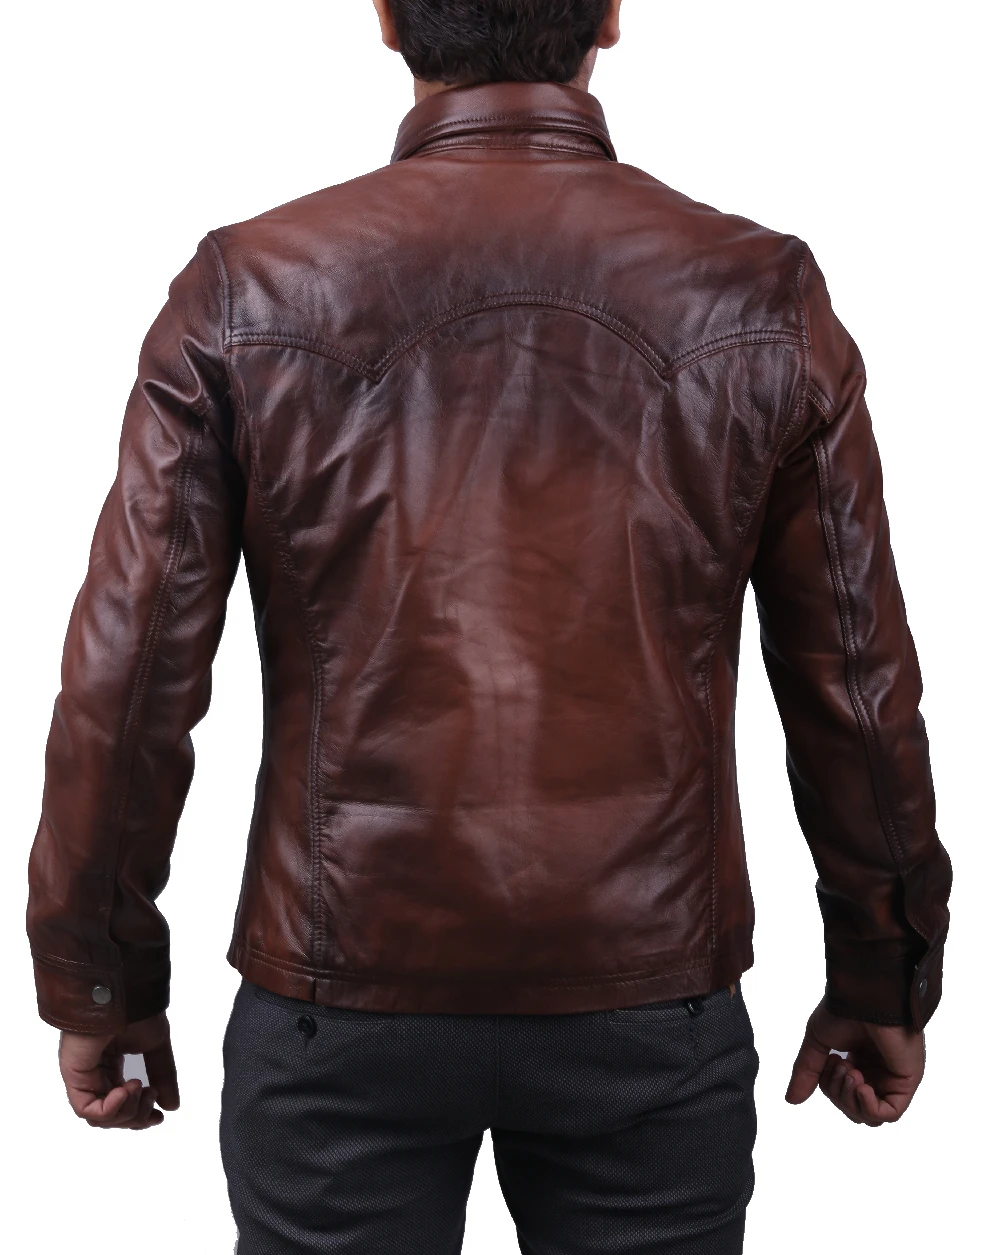 Buy Leather Shirt Leather Jacket